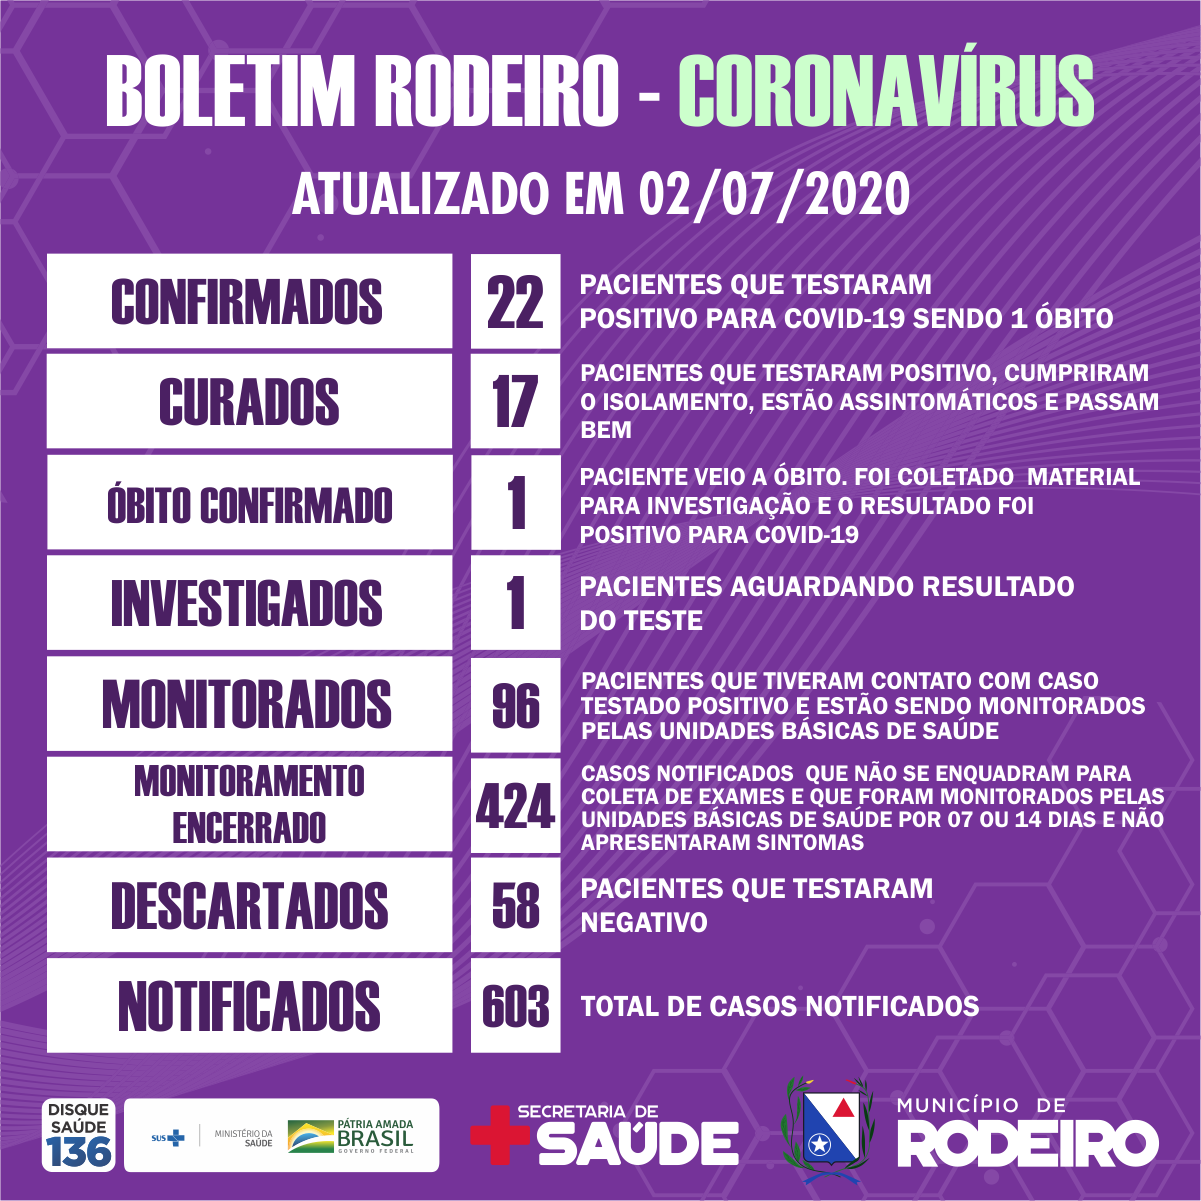 Boletim epidemiológico do Município de Rodeiro coronavírus, atualizado em 02/07/2020